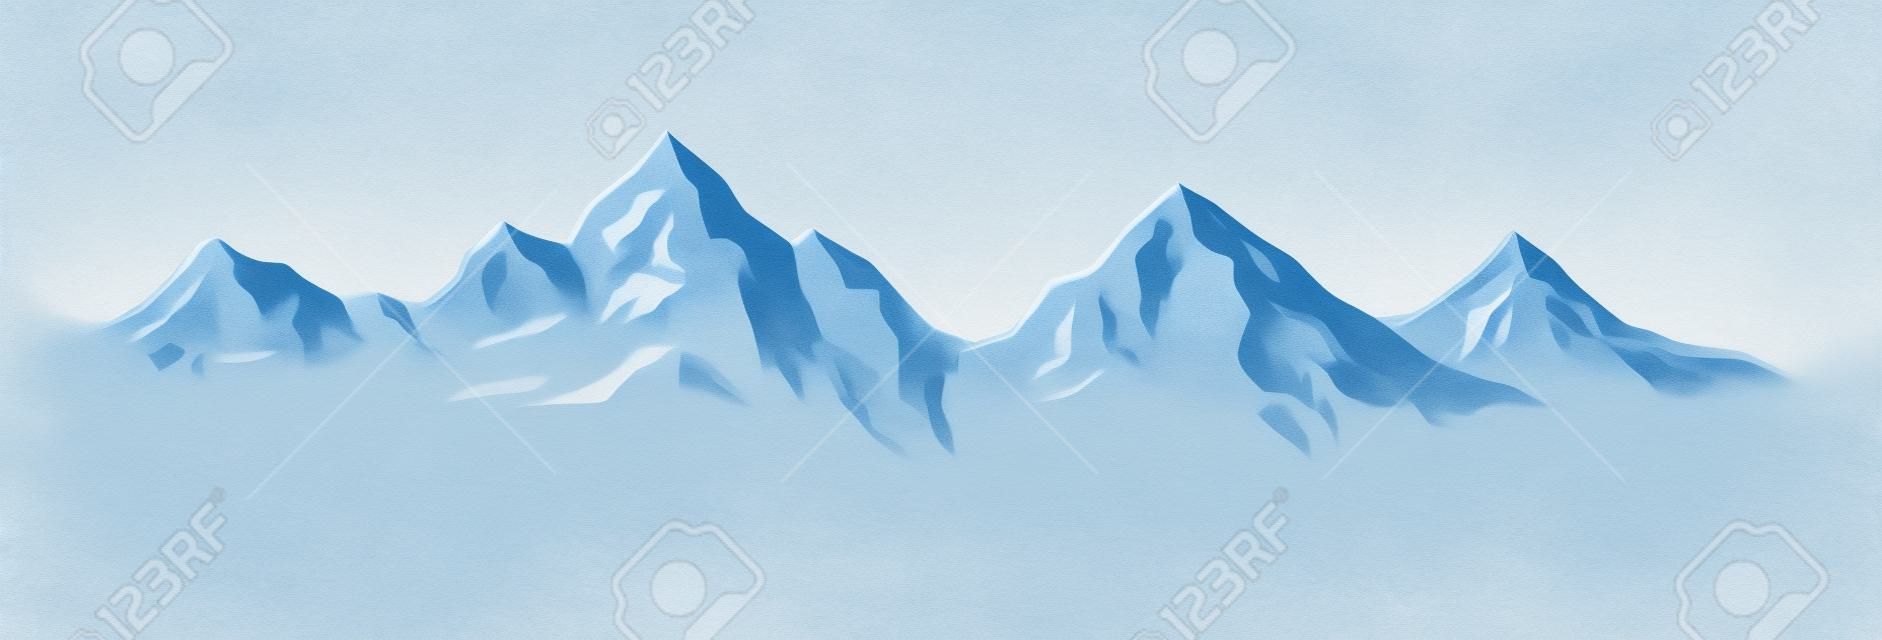 Ilustracja Zima w górach